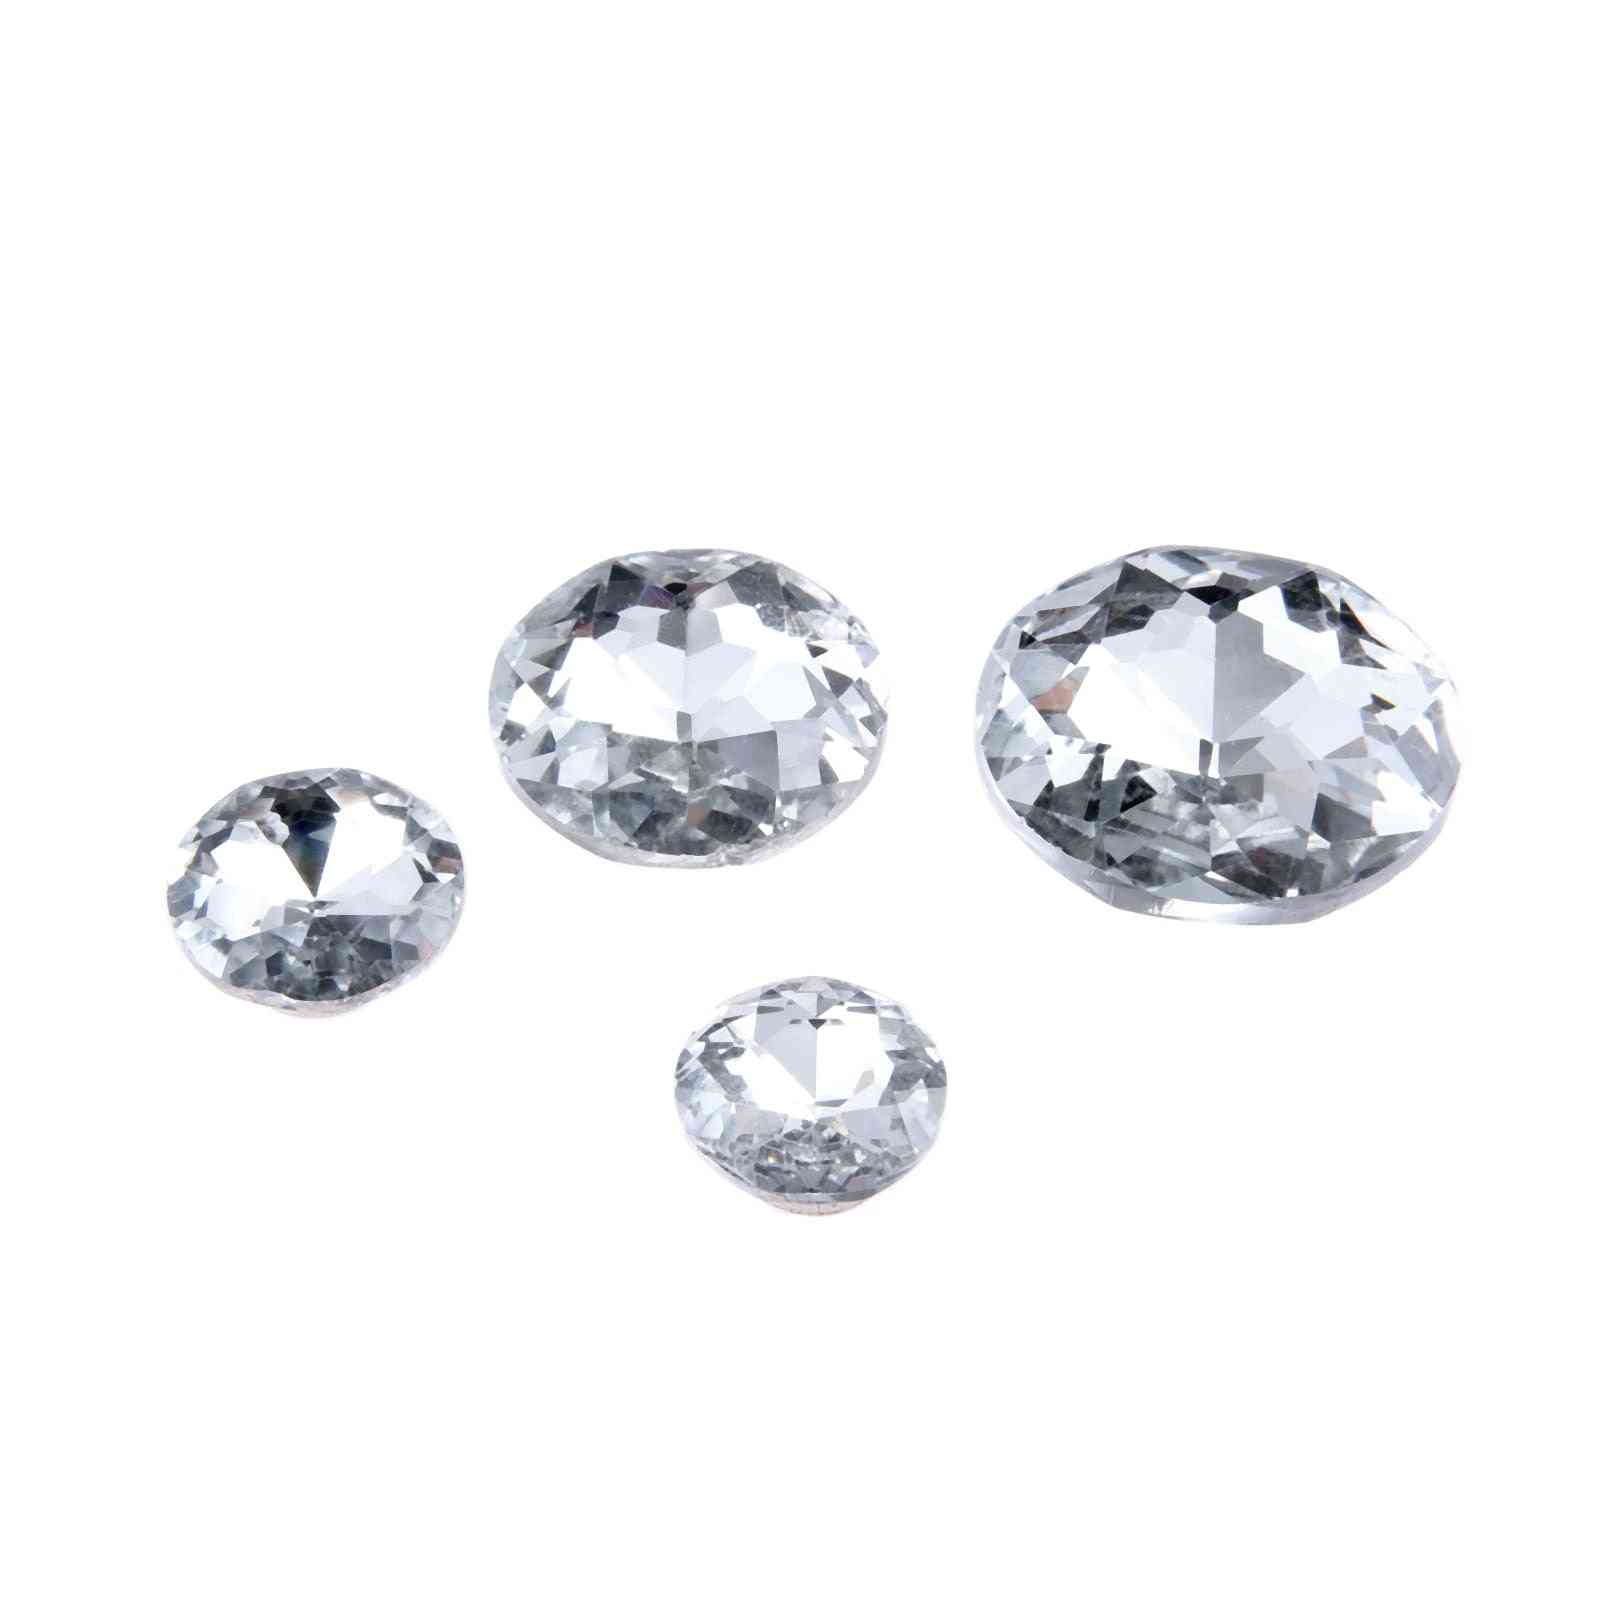 Diamantni kristali za oblazinjenje žebljev, zatiči za gumbe